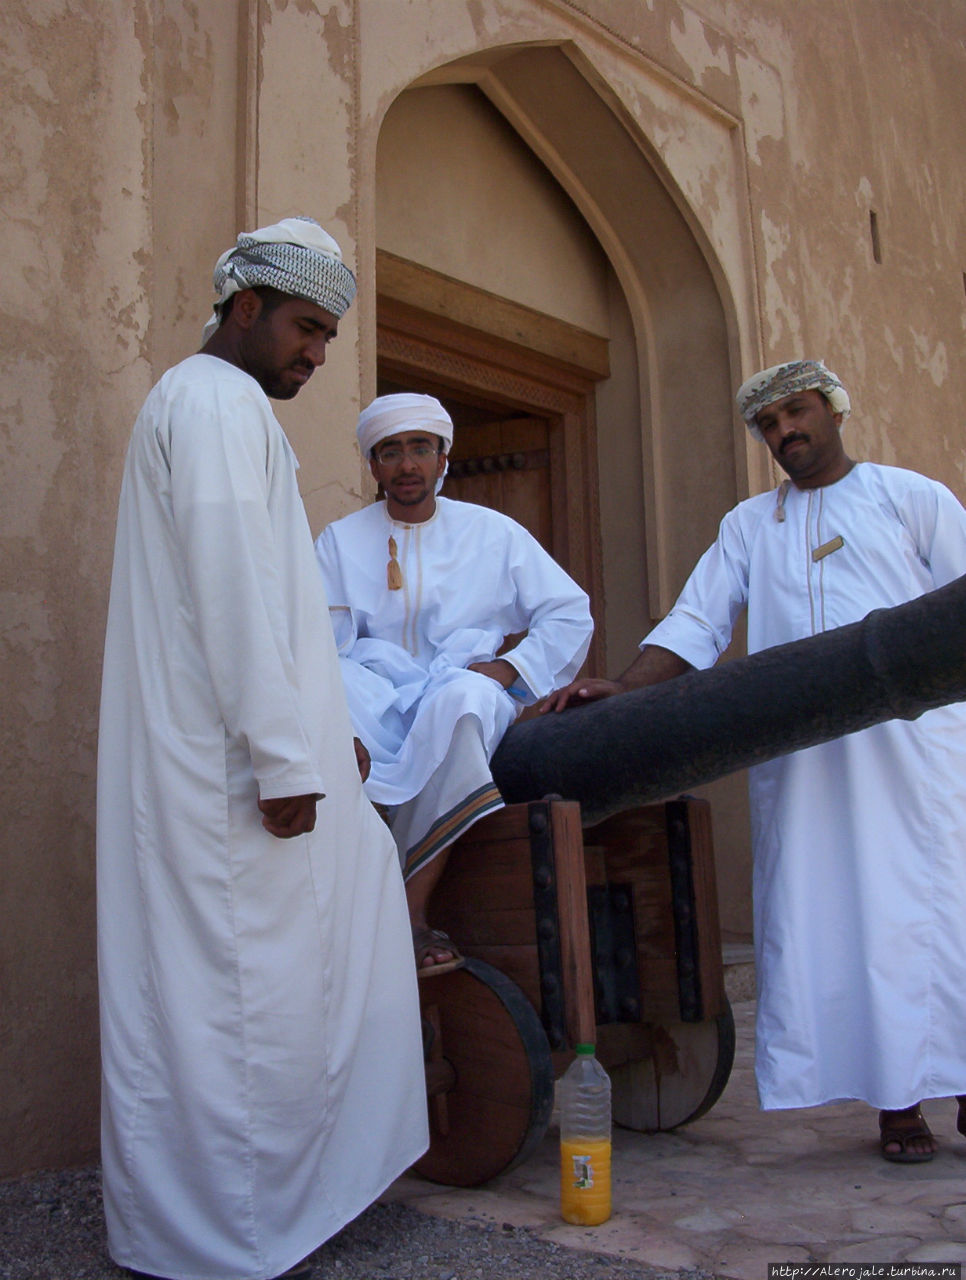 Форты и крепости Султаната Рустак, Оман